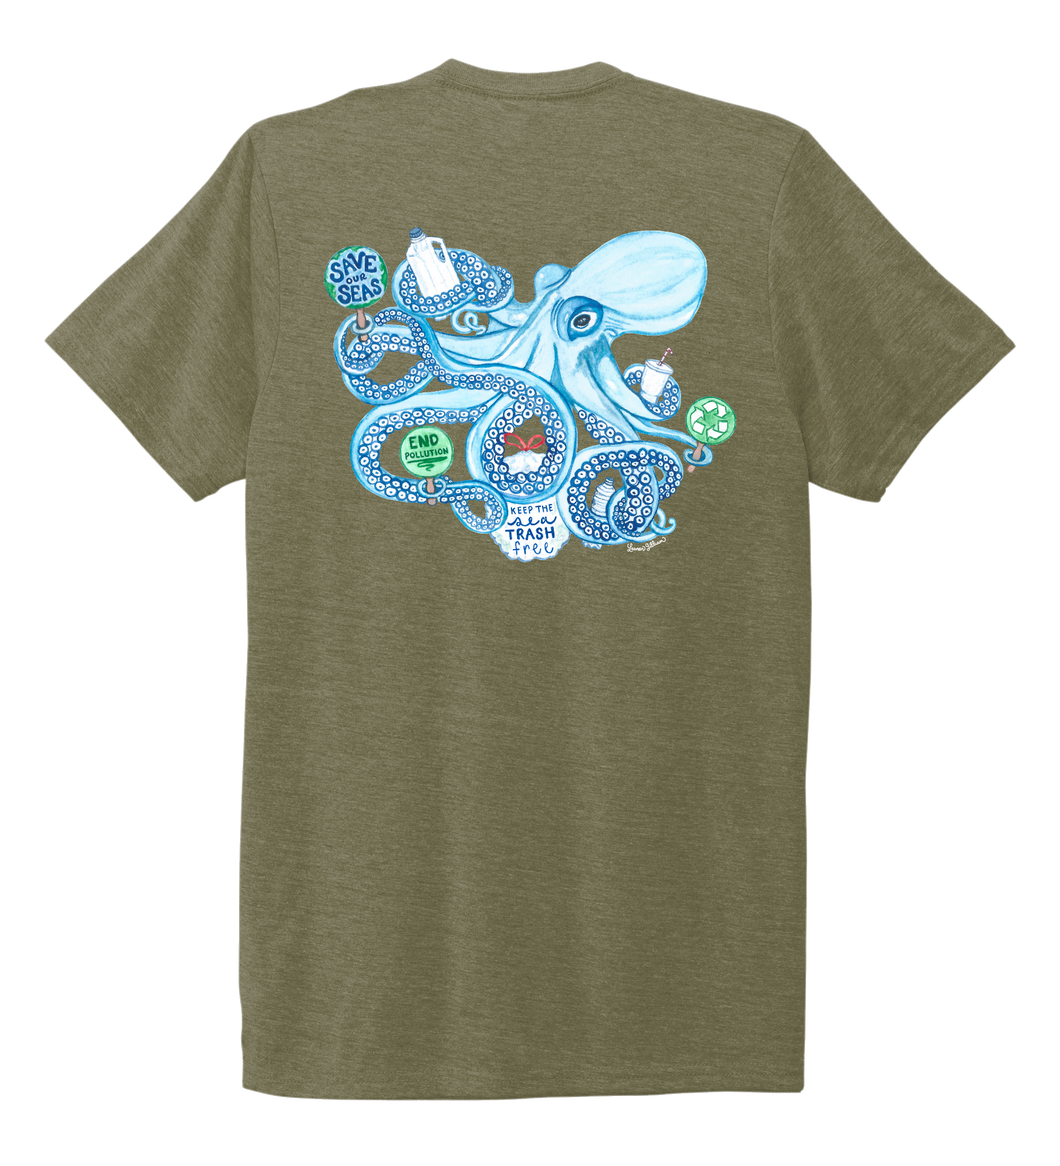 Lauren Gilliam, Octopus, Unisex Crew Neck T-shirt in Earthy Green